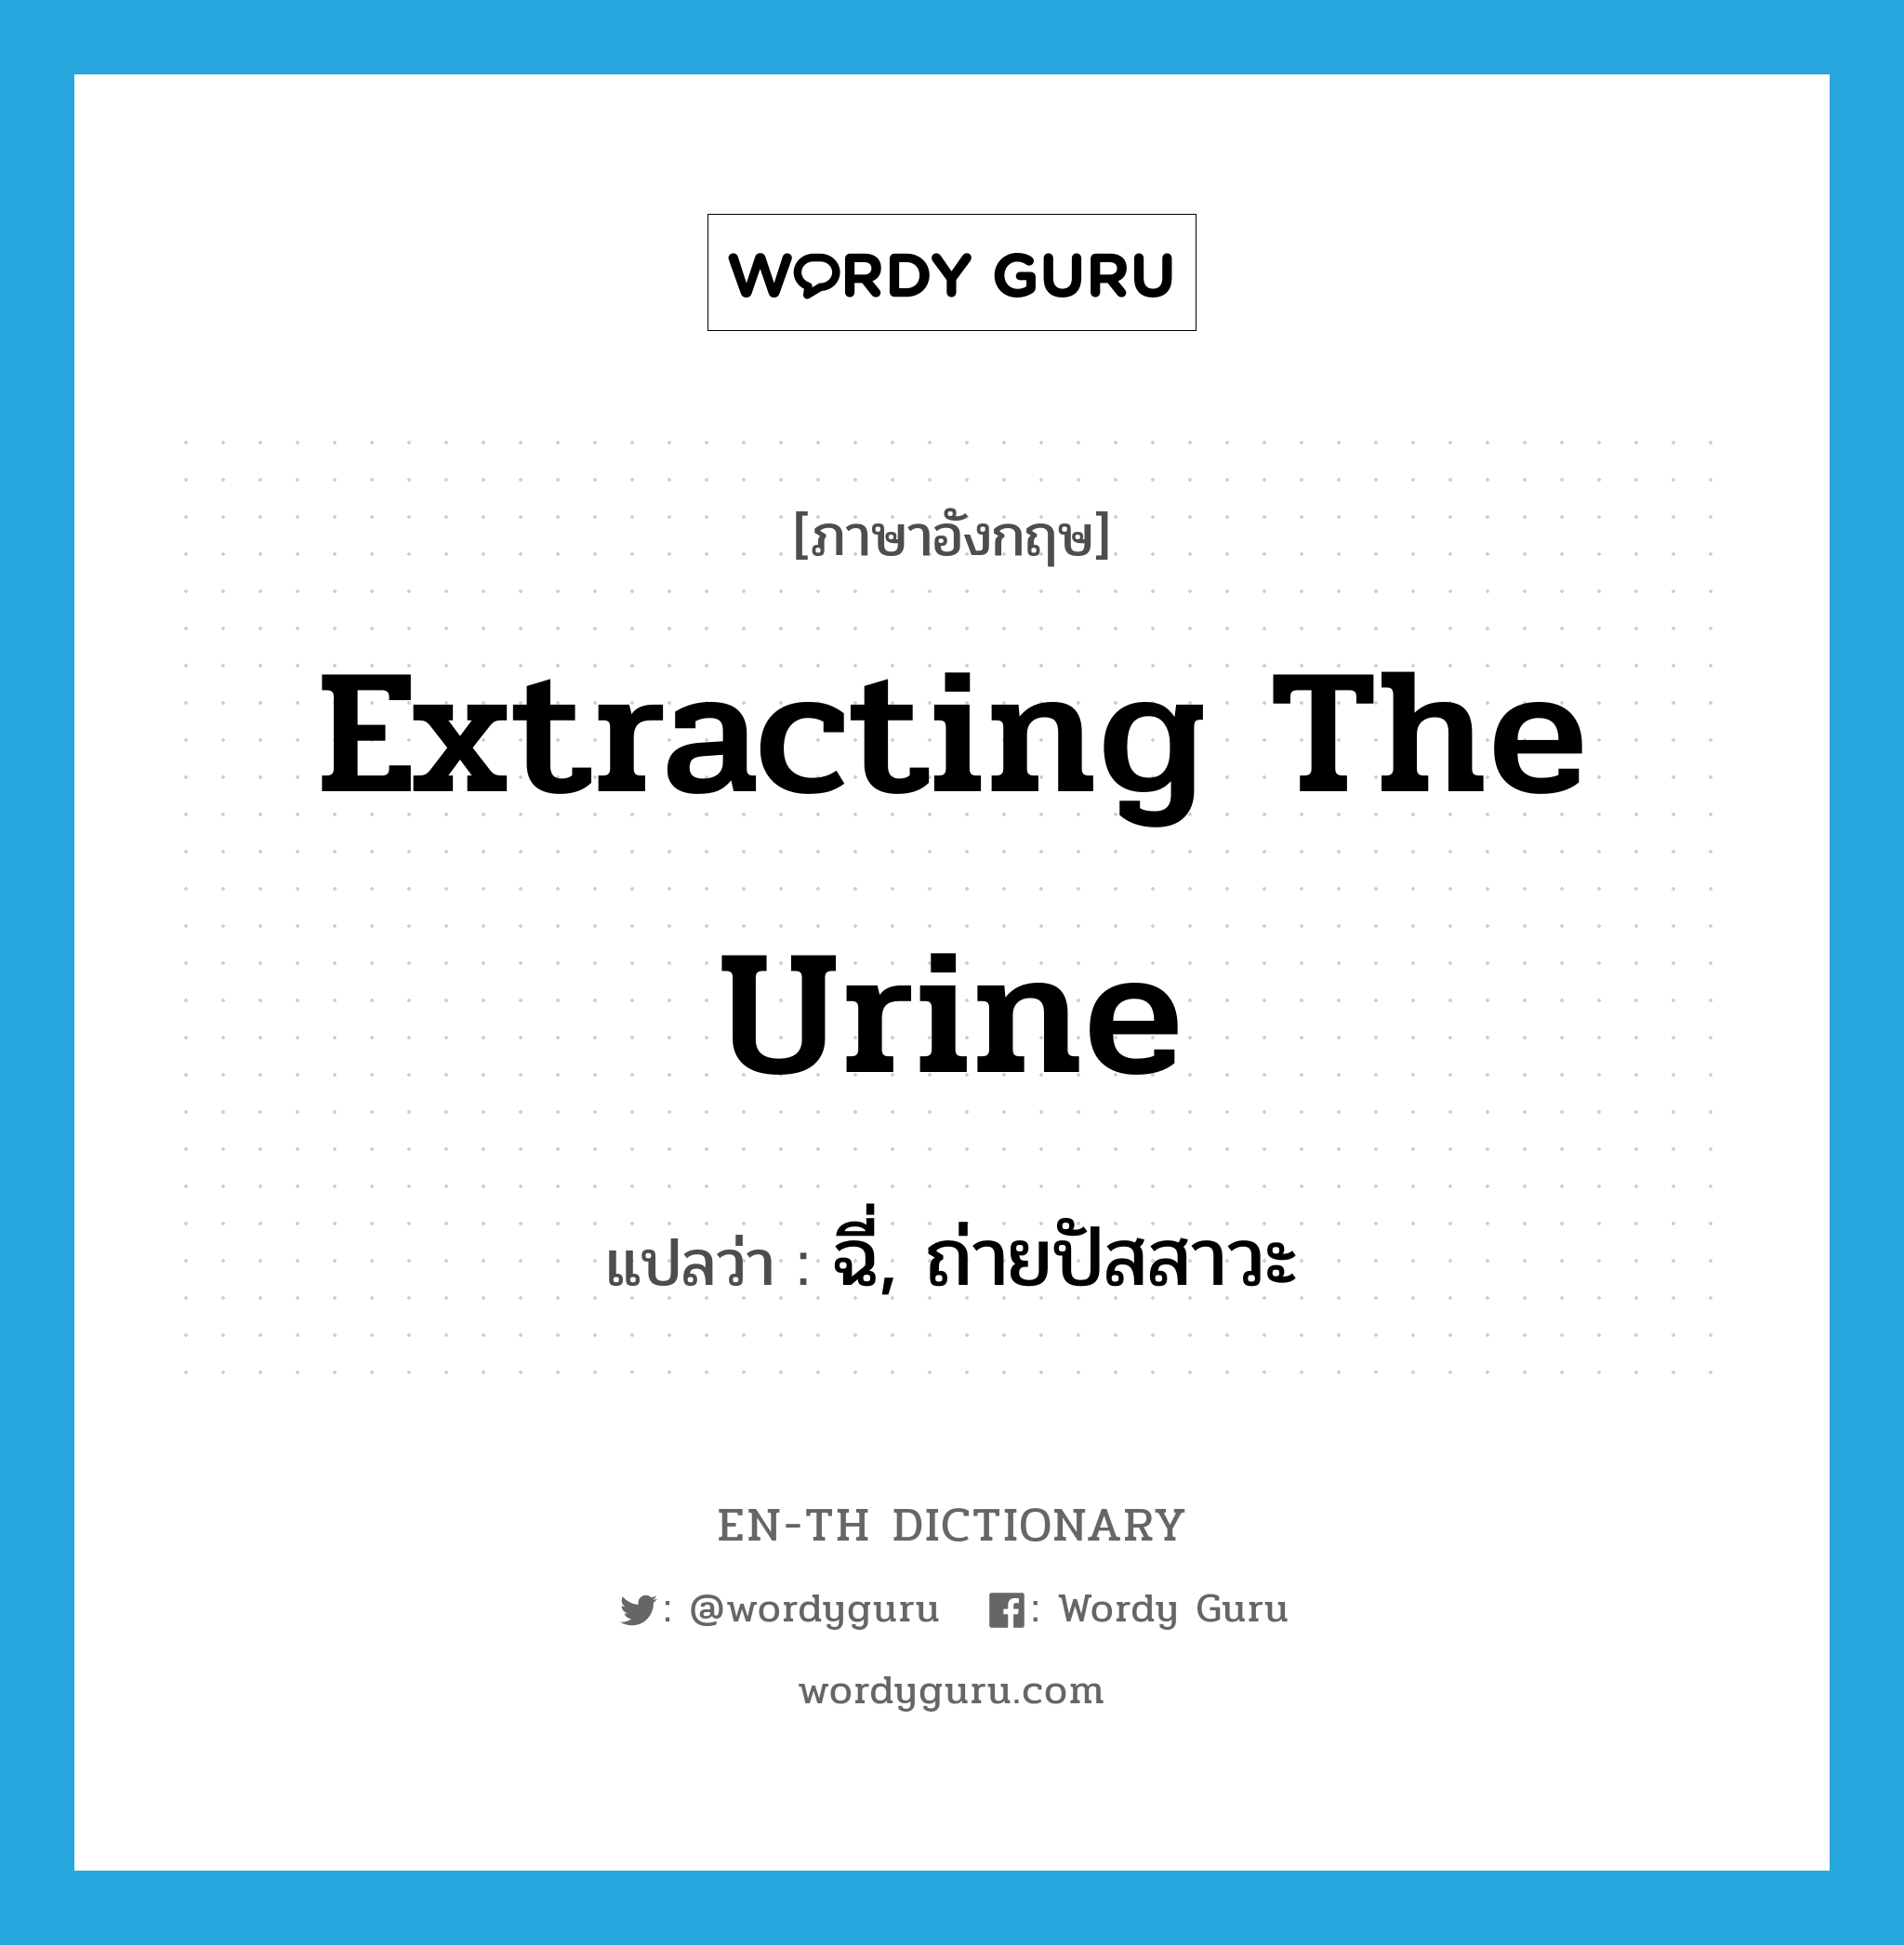 ฉี่, ถ่ายปัสสาวะ ภาษาอังกฤษ?, คำศัพท์ภาษาอังกฤษ ฉี่, ถ่ายปัสสาวะ แปลว่า extracting the urine ประเภท SL หมวด SL